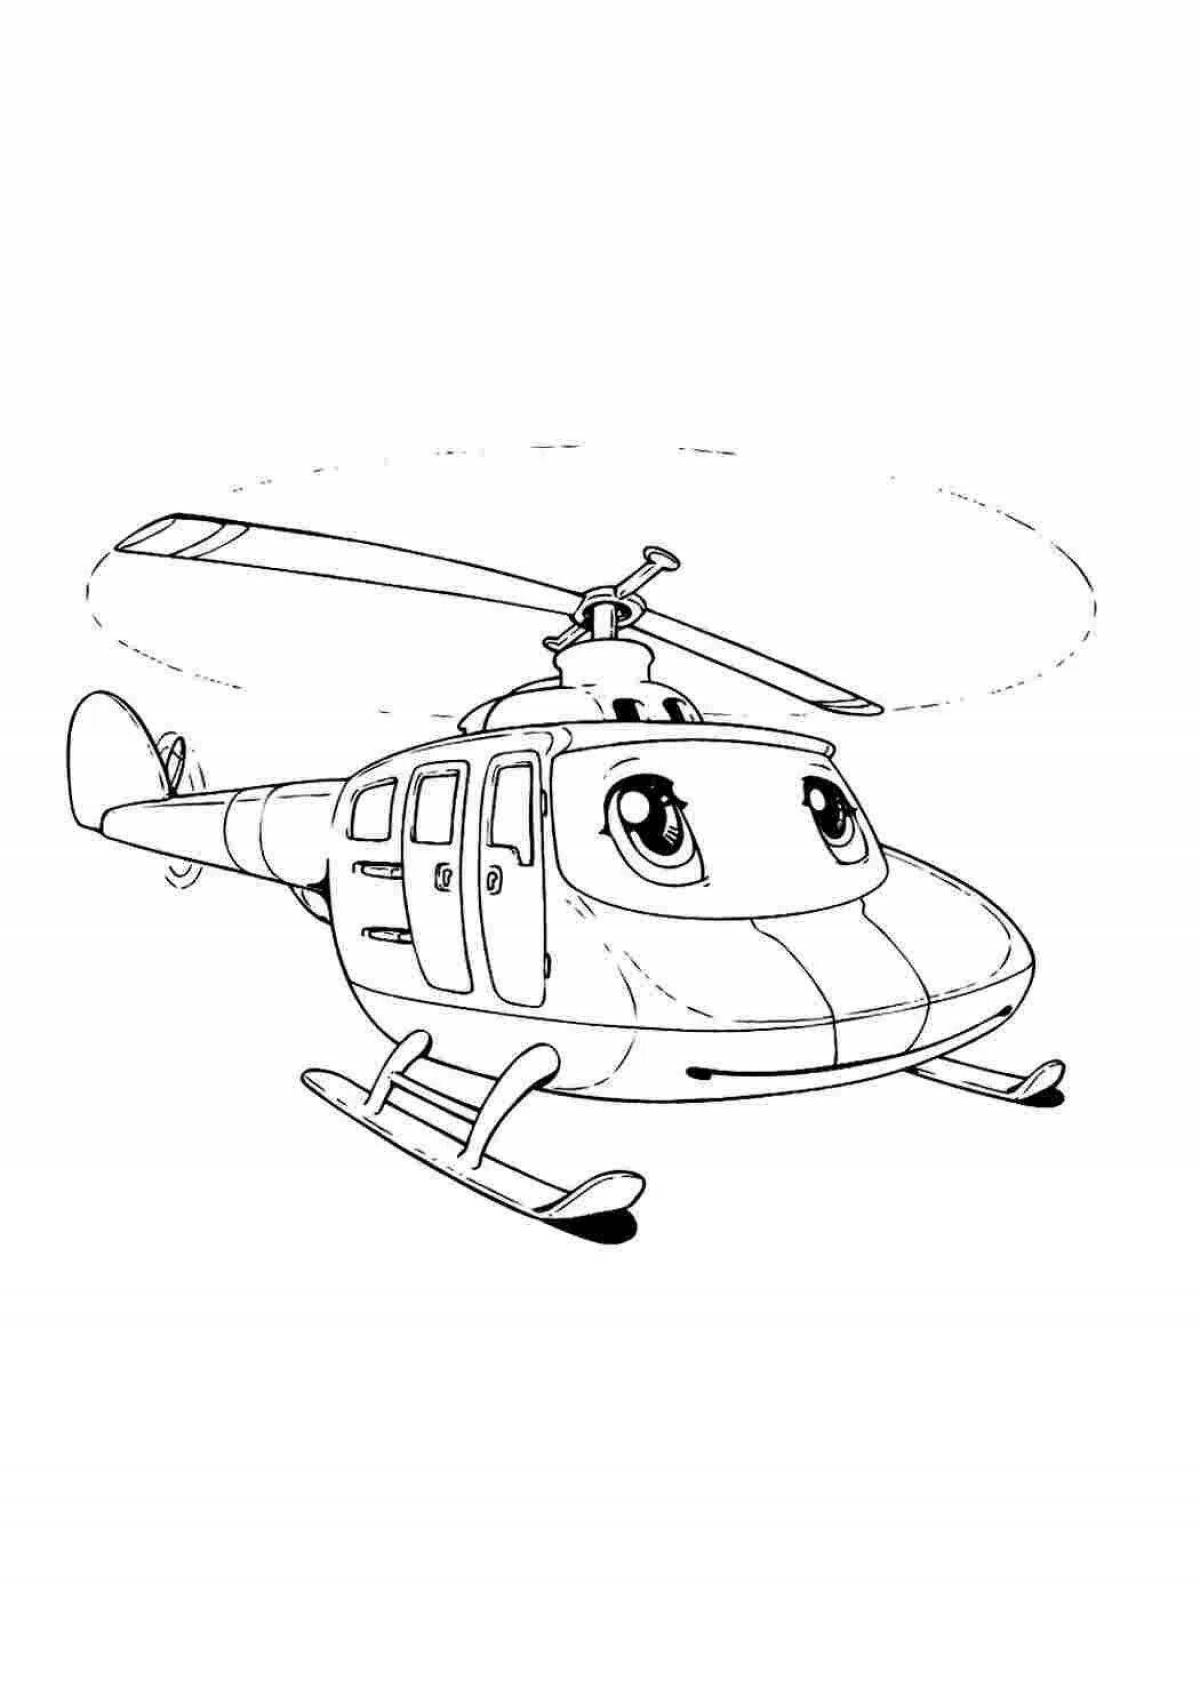 Забавная раскраска полицейского вертолета для детей